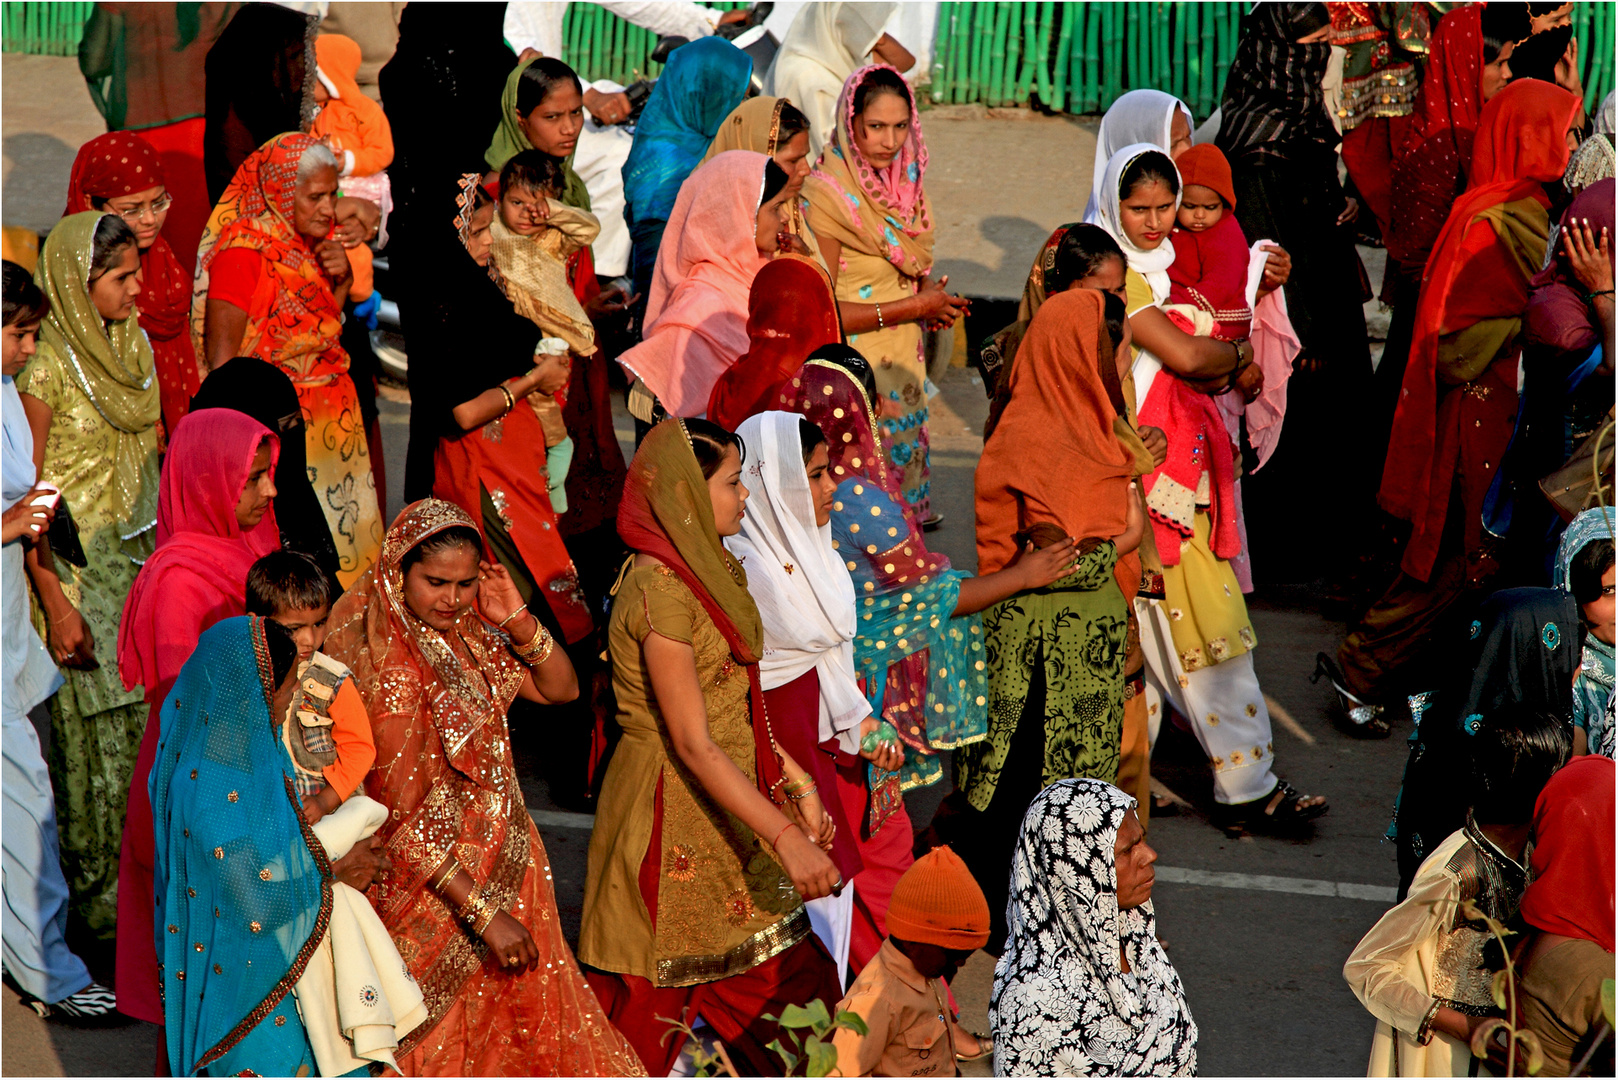 Frauen und ihre Saris ....welch Schönheit